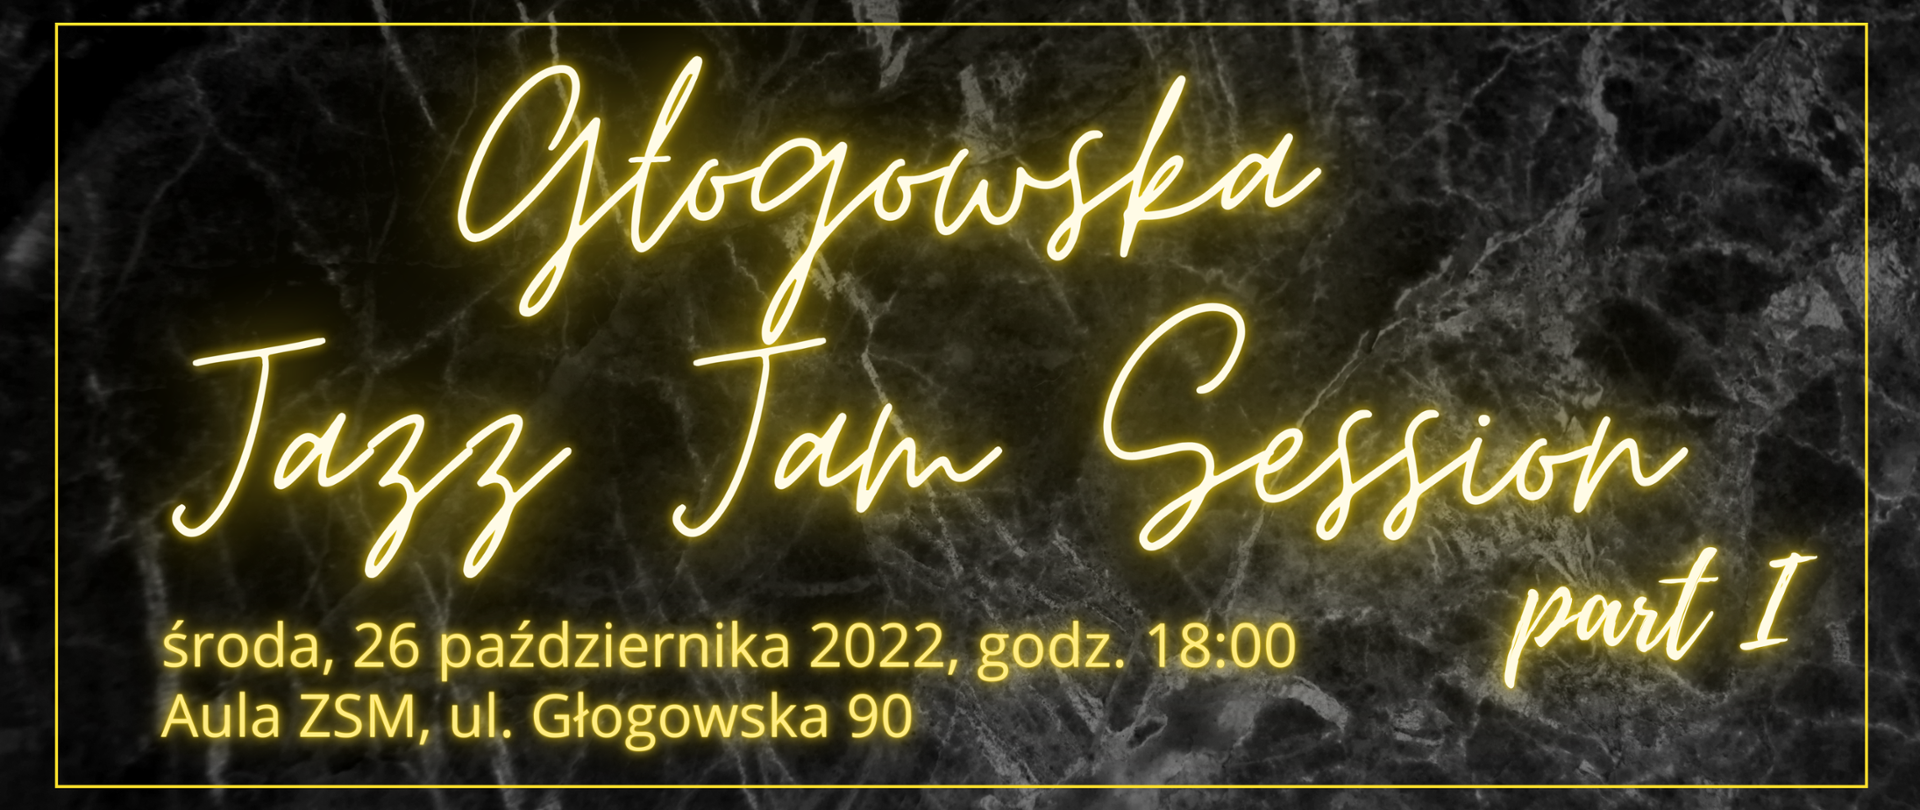 Grafika na ciemnym, marmurkowym tle z neonowym, żółtym tekstem: "Głogowska Jazz Jam Session, part I, środa, 26 października 2022, godz. 18:00, Aula ZSM, ul. Głogowska 90